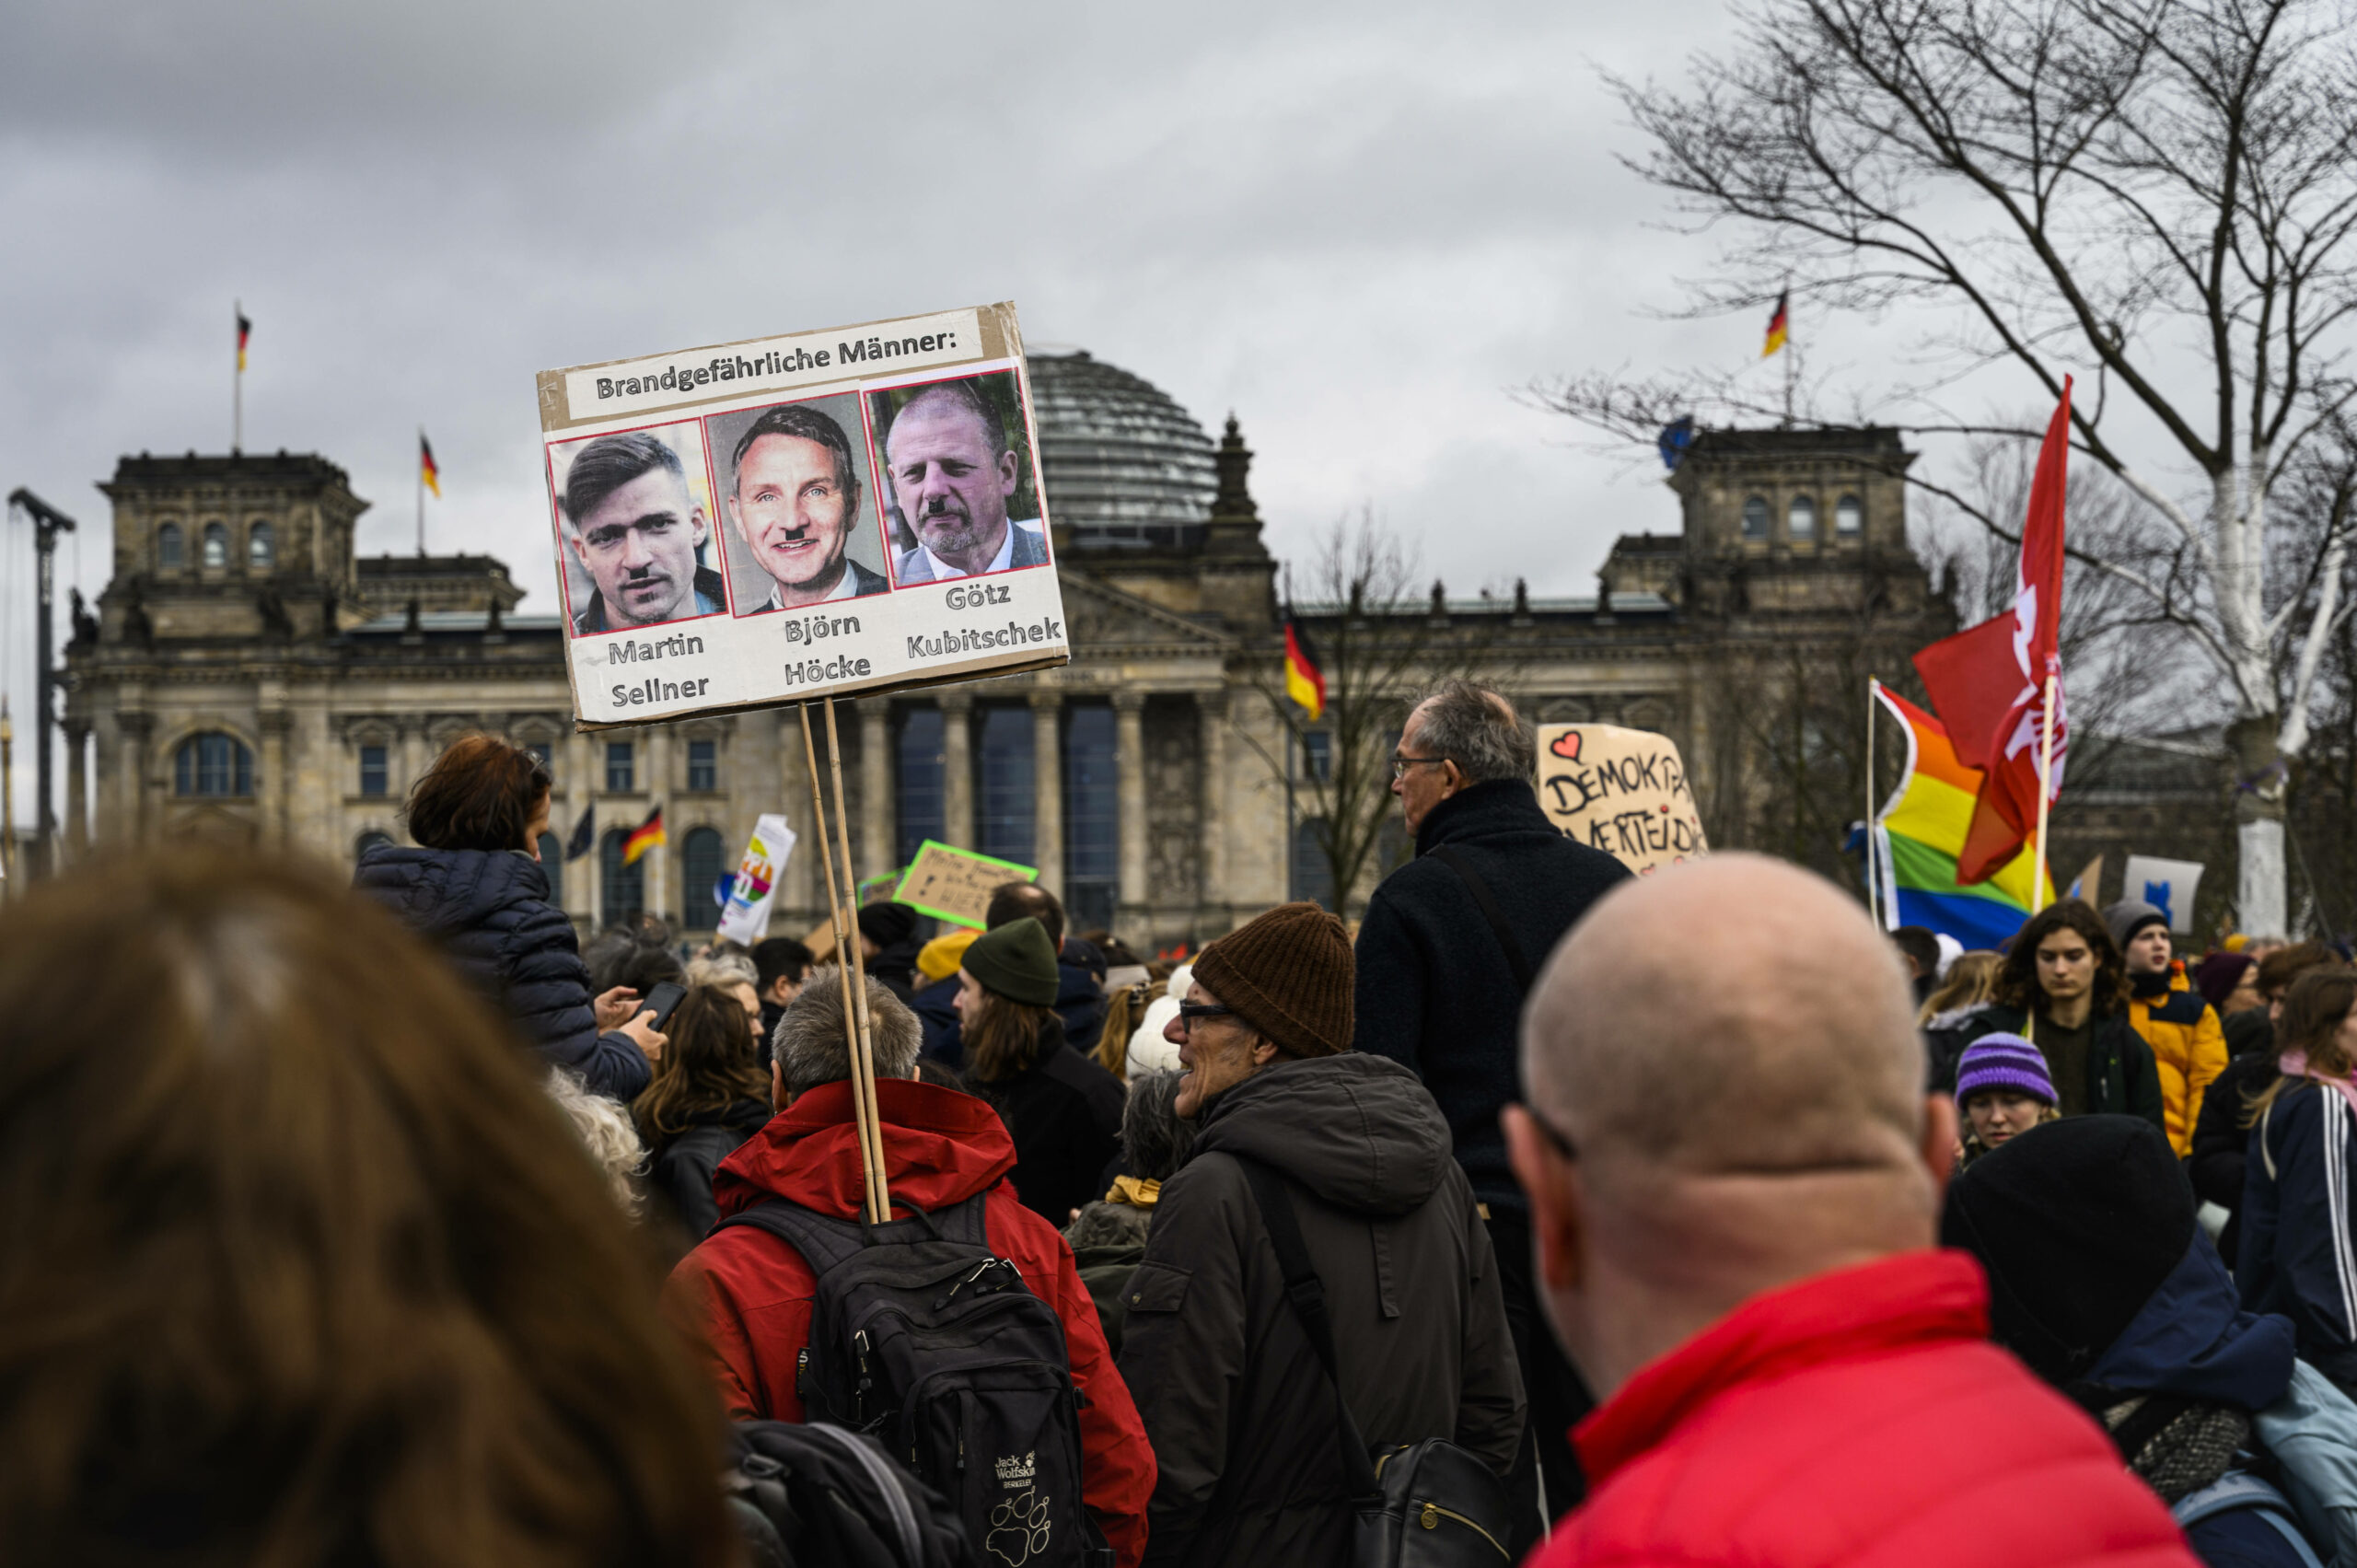 Auf einem Plakat bei einer Demo in Berlin sind die drei Rechtsextremisten Martin Sellner, Björn Höcke und Götz Kubitschek zu sehen, darüber steht „Brandgefährliche Männer“